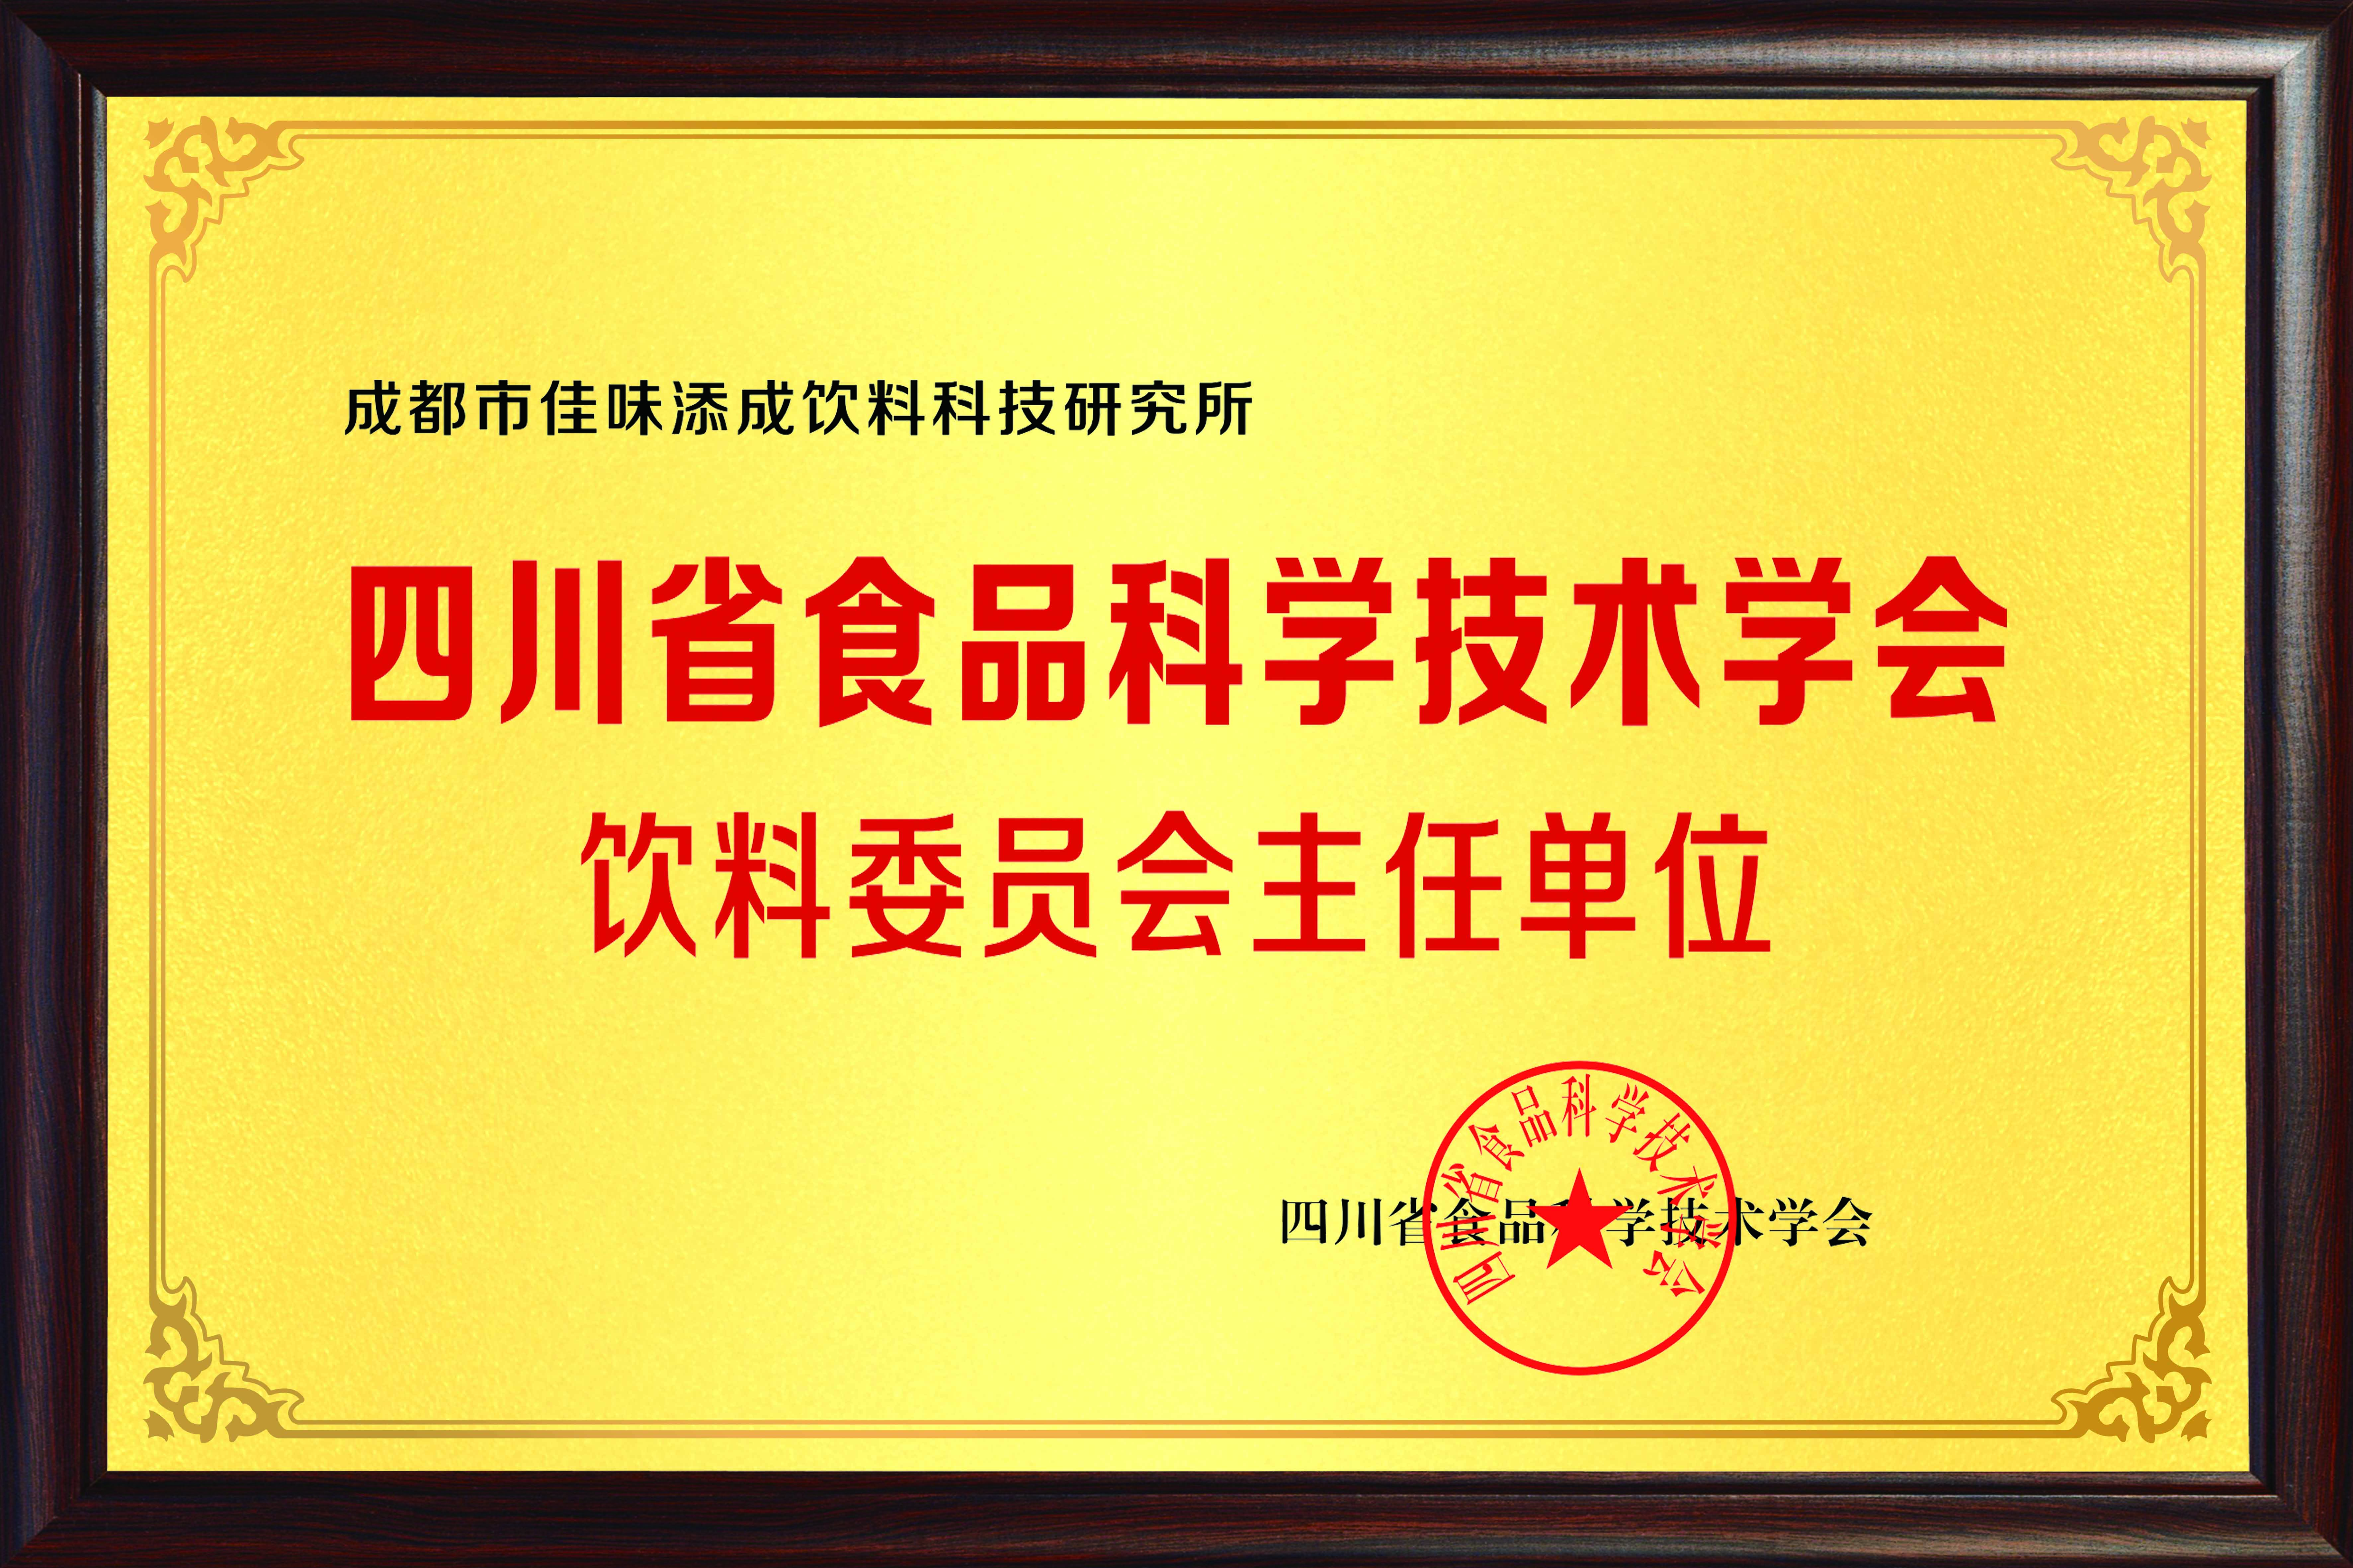 四川食品科学技术学会饮料委员会主任单位